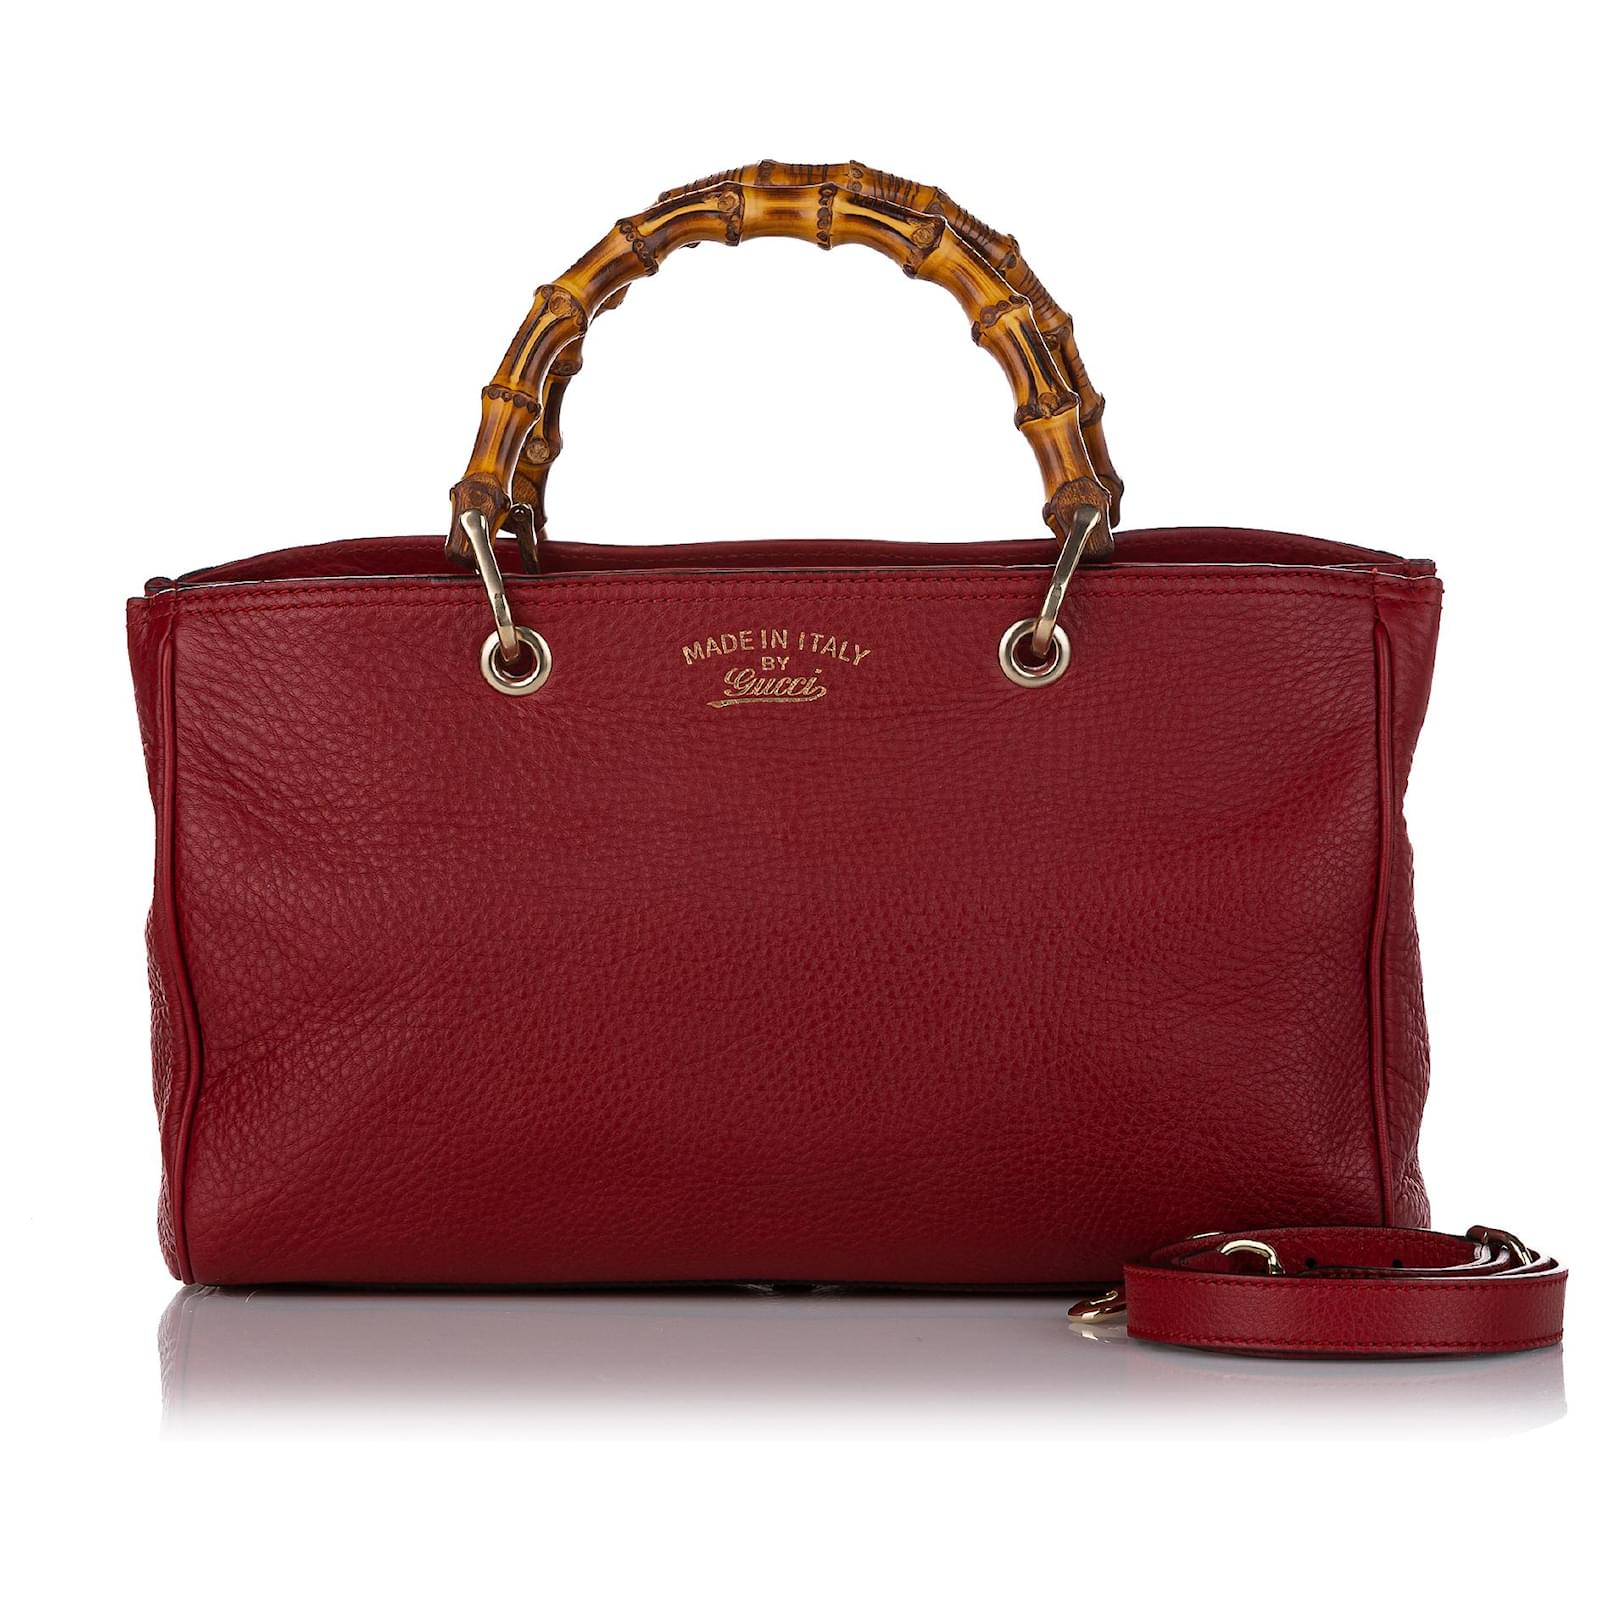 Gucci Bamboo Shopper Mini Leather Top Handle Bag in Metallic